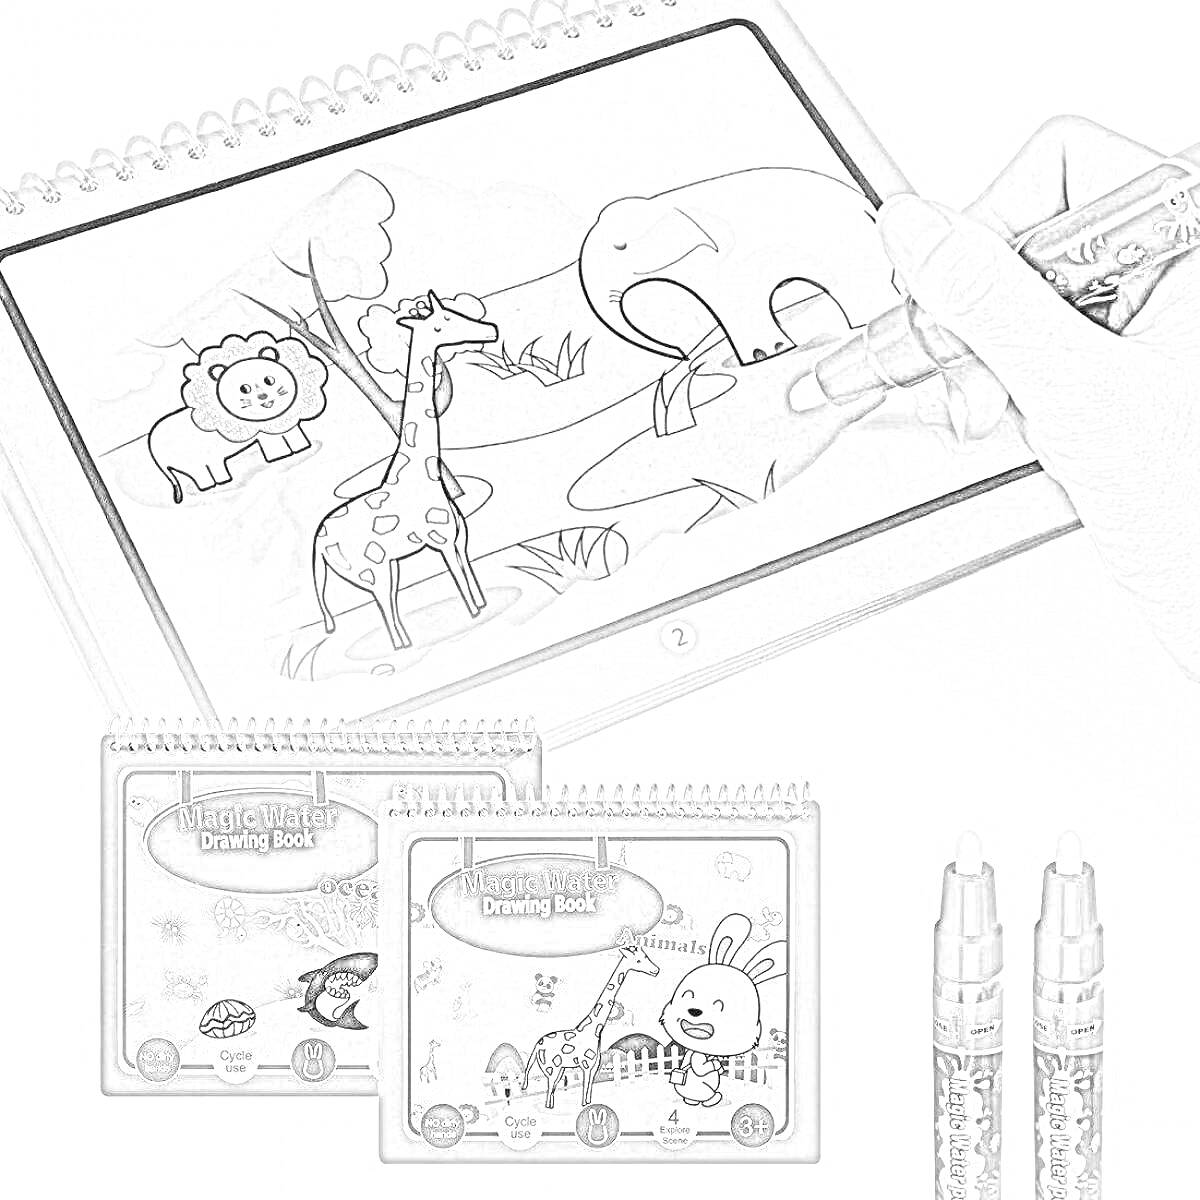 Раскраска Magic water book с изображениями льва, жирафа, слона, деревьев и водоема, а также двумя ручками и двумя книгами с изображением кролика и девочки